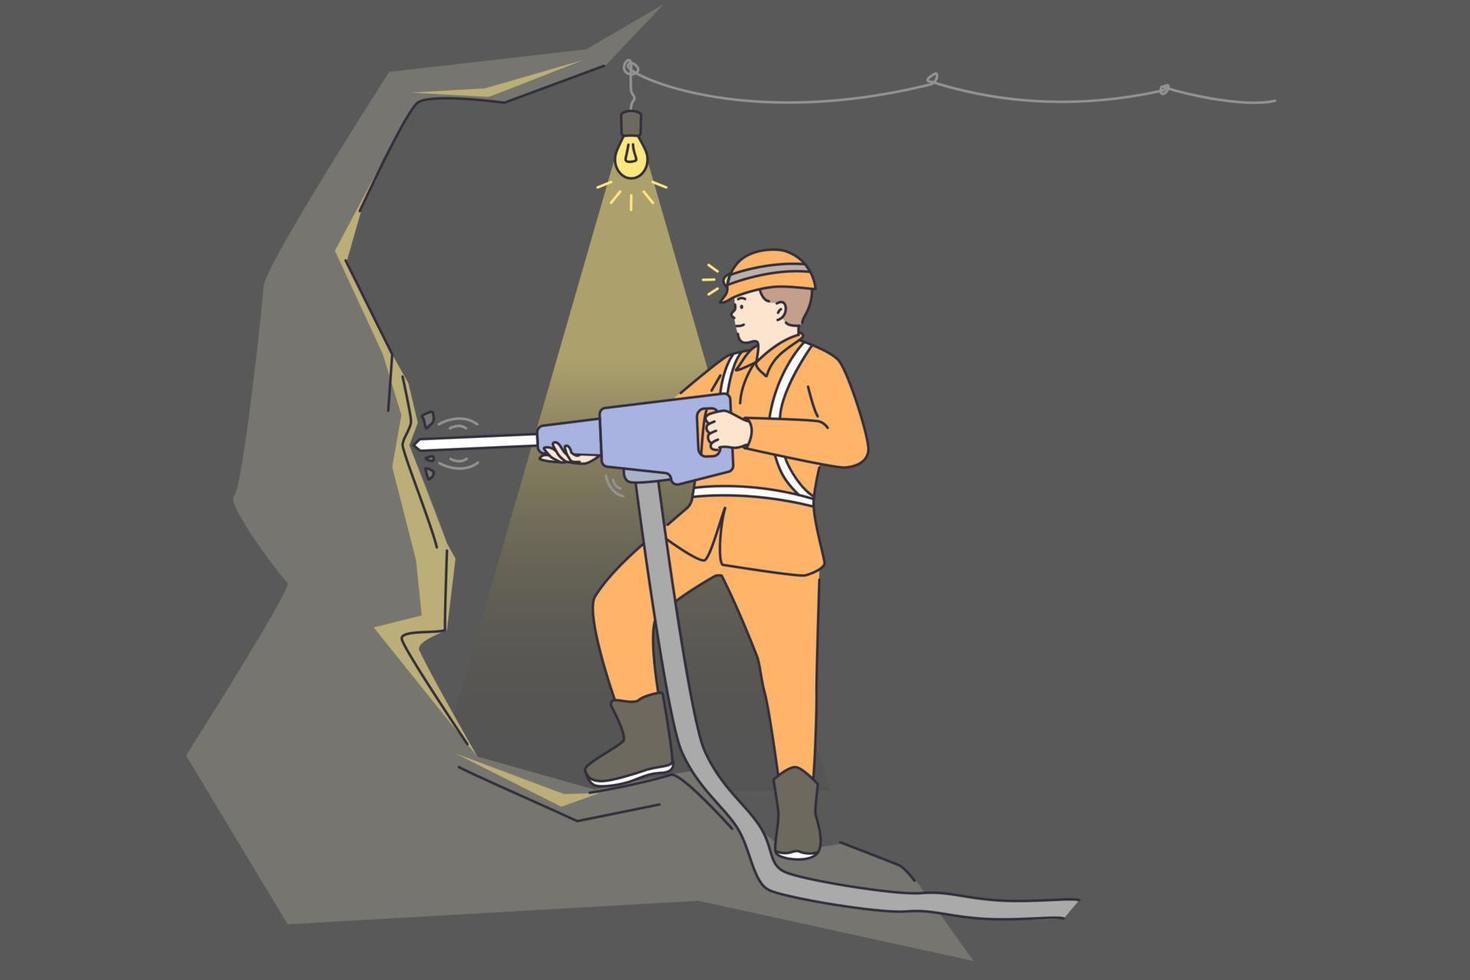 trabajando como menor en concepto de mina. joven minero positivo con uniforme y casco de pie con herramienta y perforación de roca ilustración vectorial vector